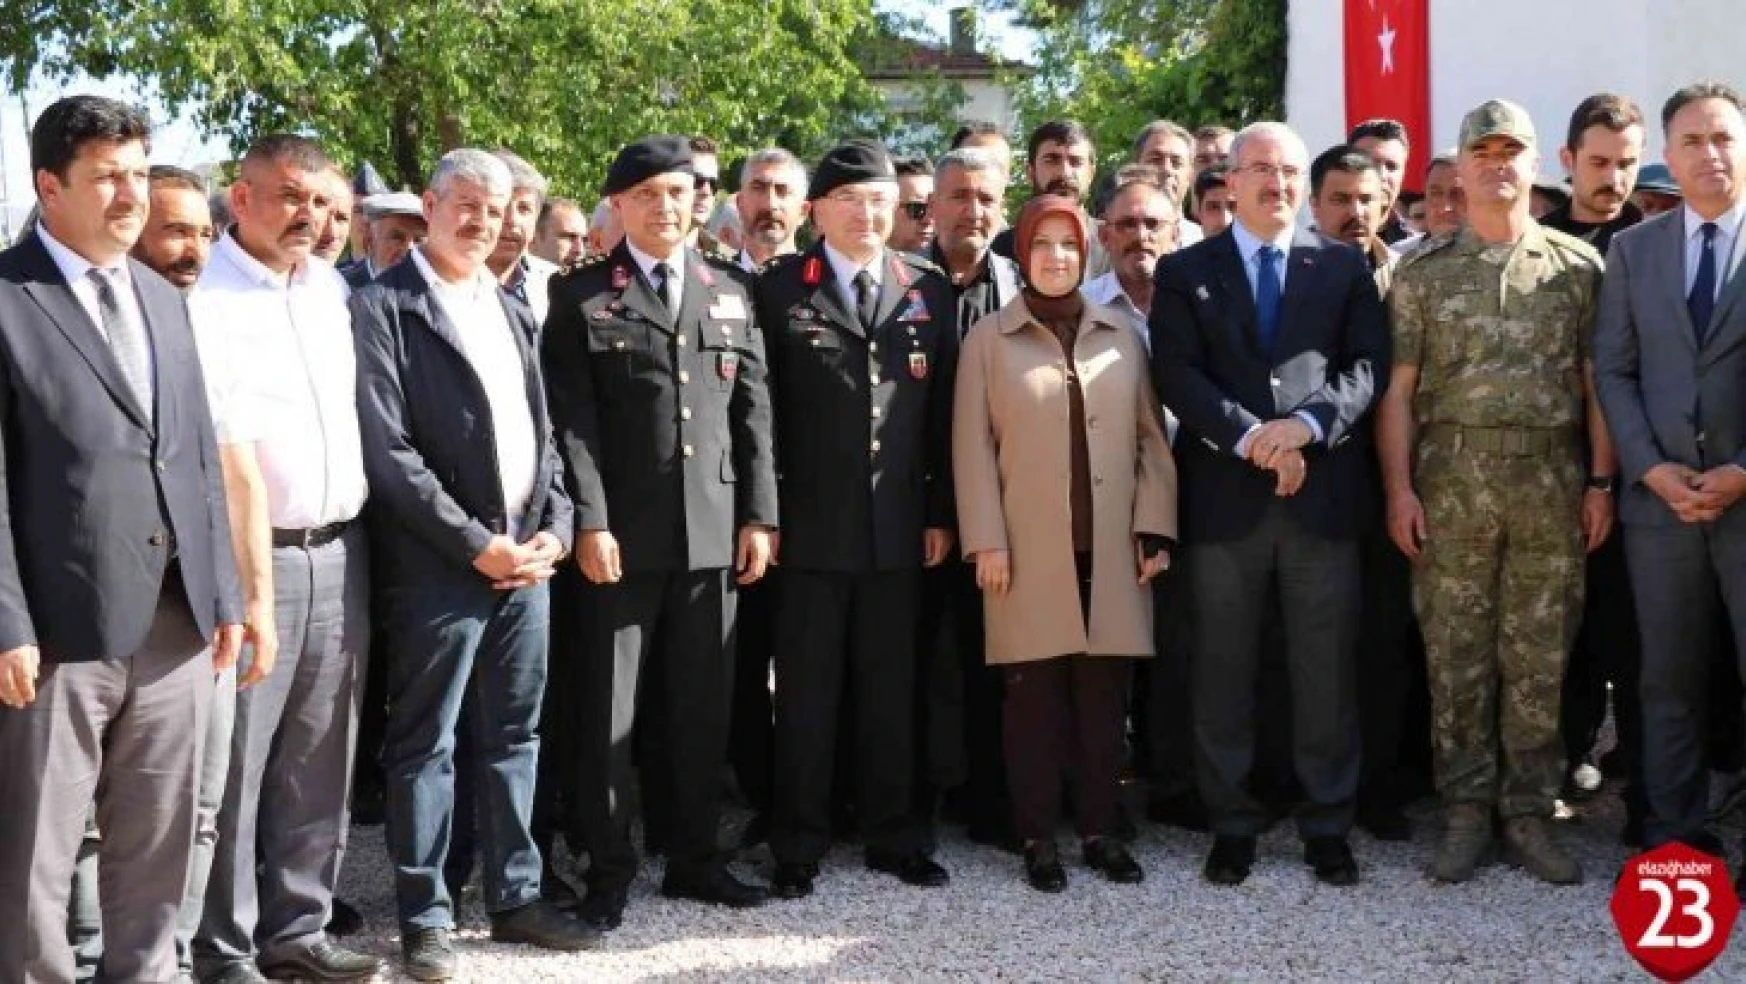 Elazığ'da yeni Jandarma Karakolu açıldı